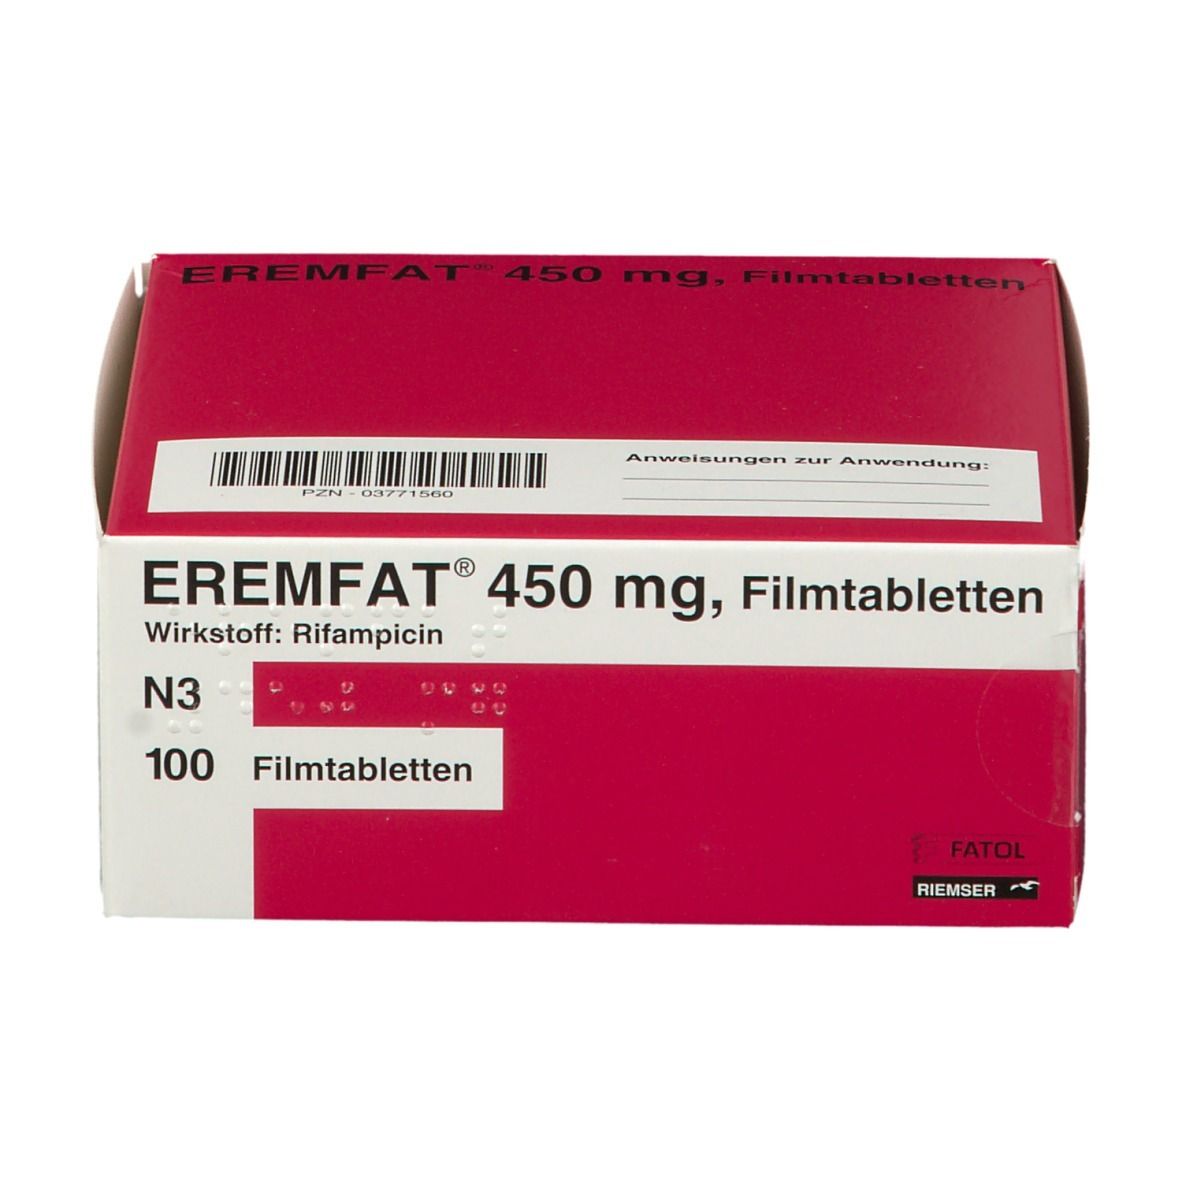 EREMFAT® 450 mg